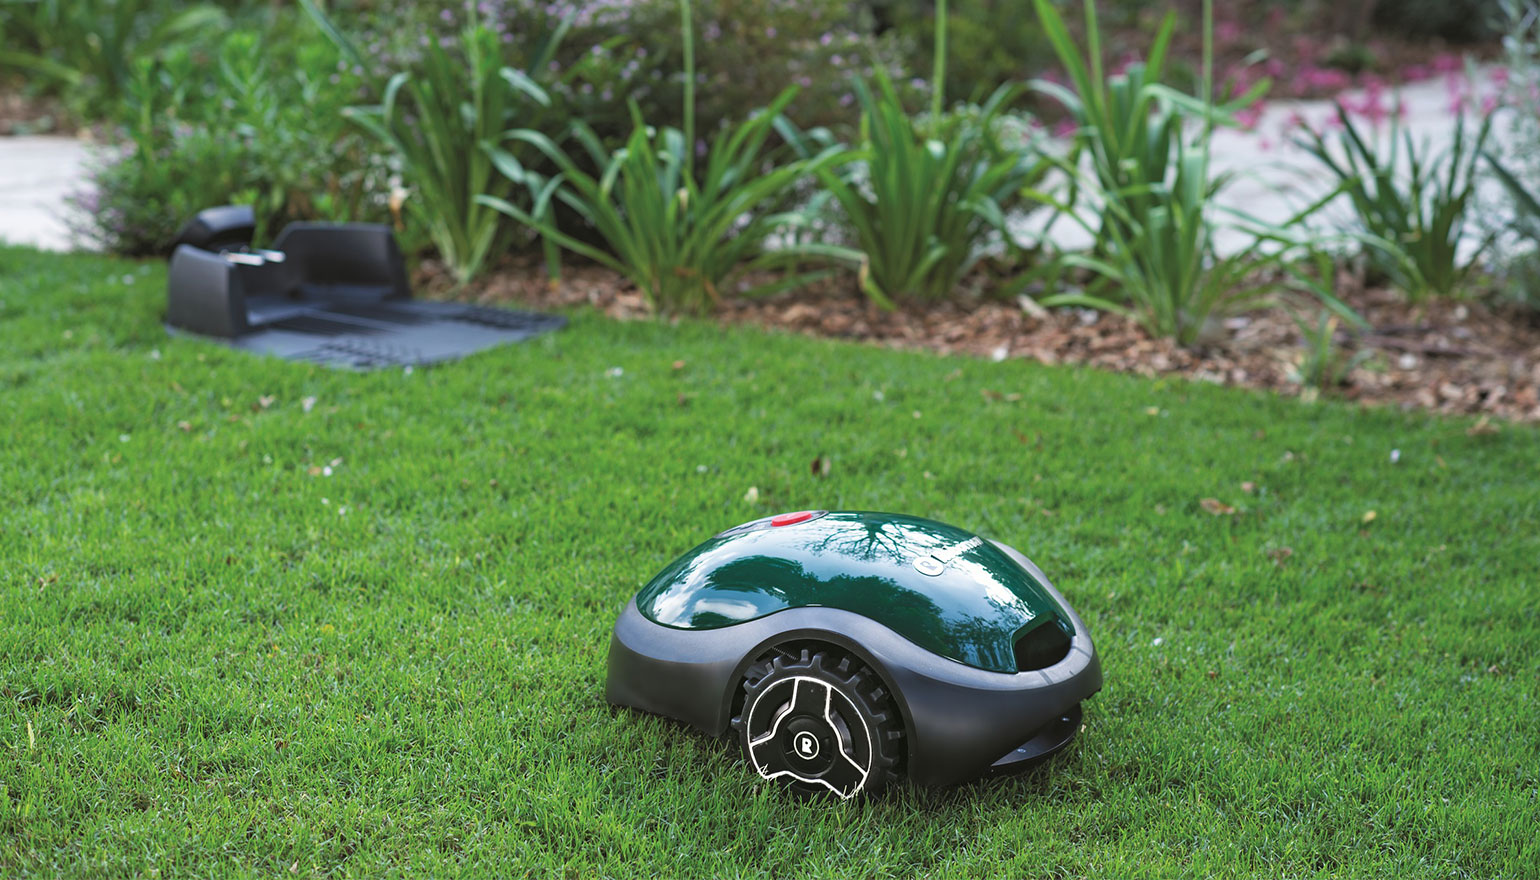 Tuinidee. De Robomow robotmaaier wordt met stemcontrole aangestuurd via Alexa #robotmaaier #robomow #wolfgarten #tuin #grasmaaien #grasmaaier #gazon